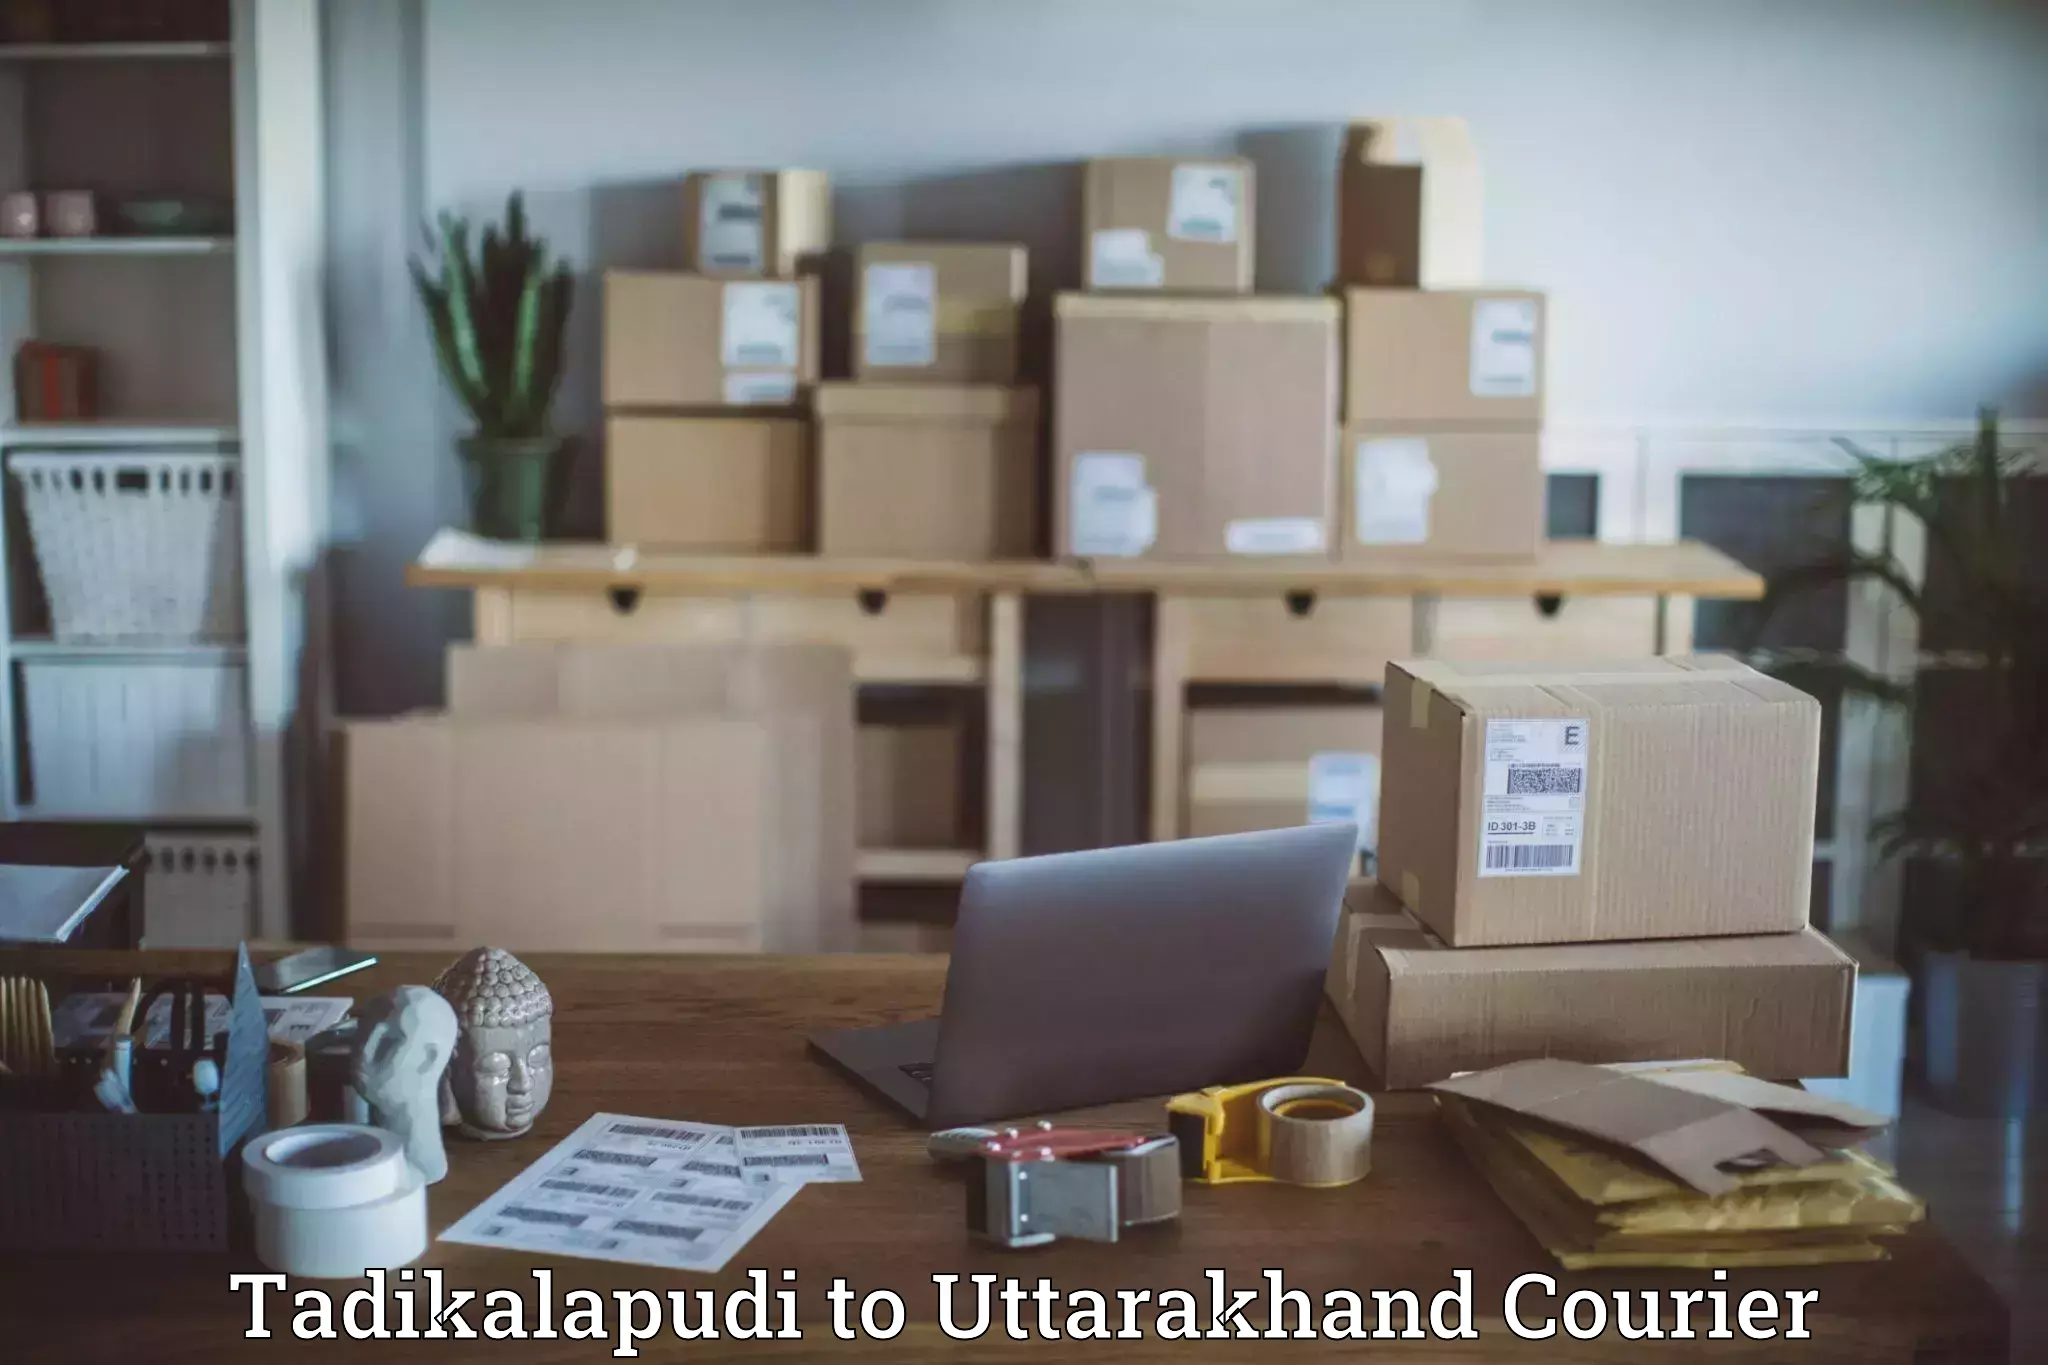 Nationwide parcel services Tadikalapudi to Uttarakhand